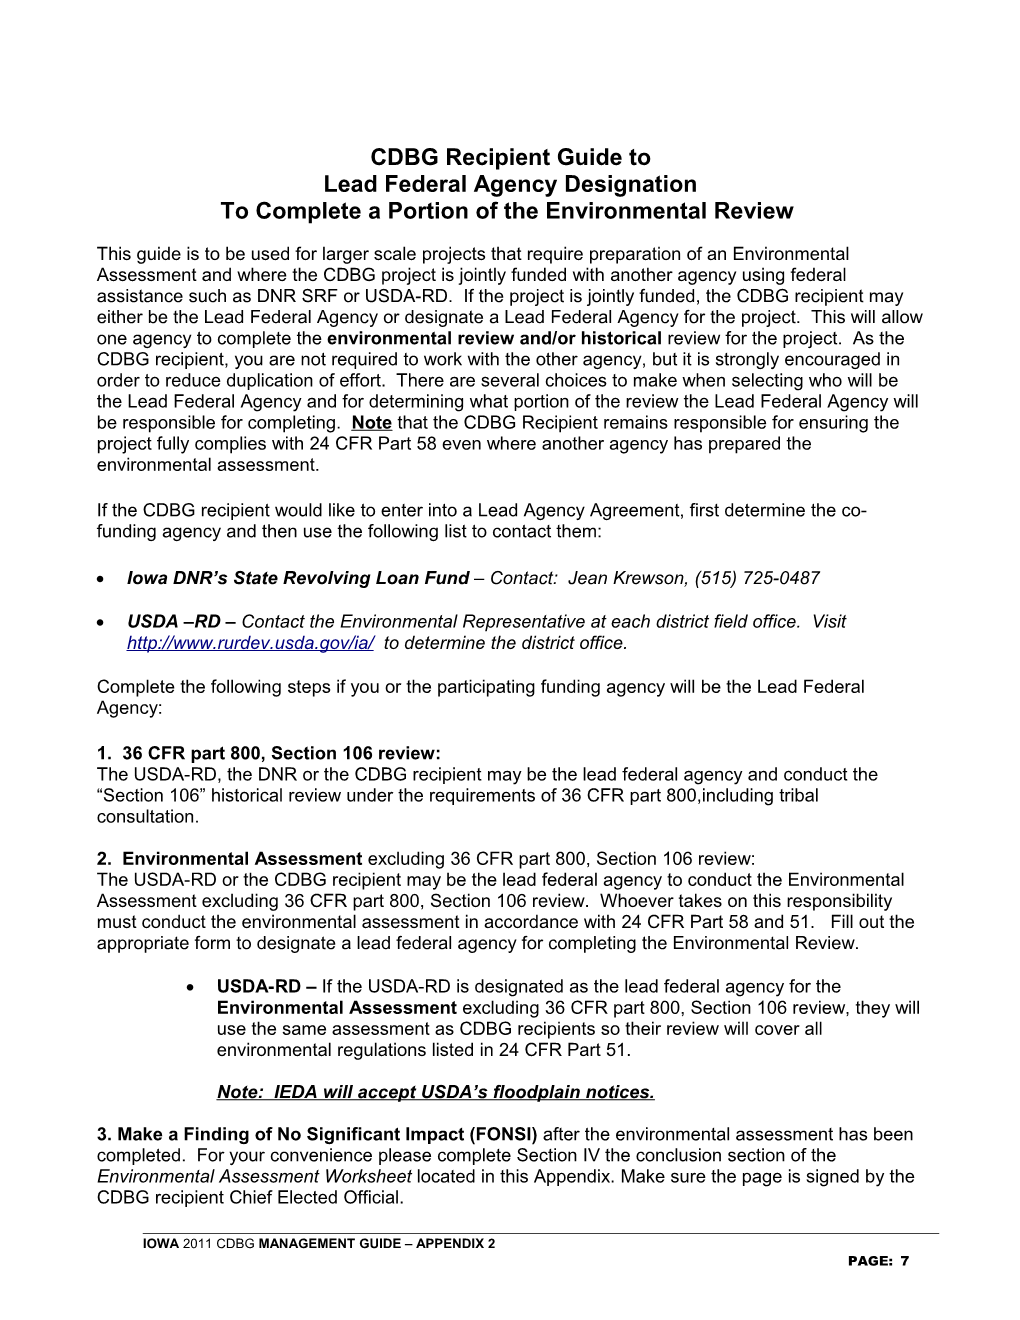 Lead Federal Agency Designation